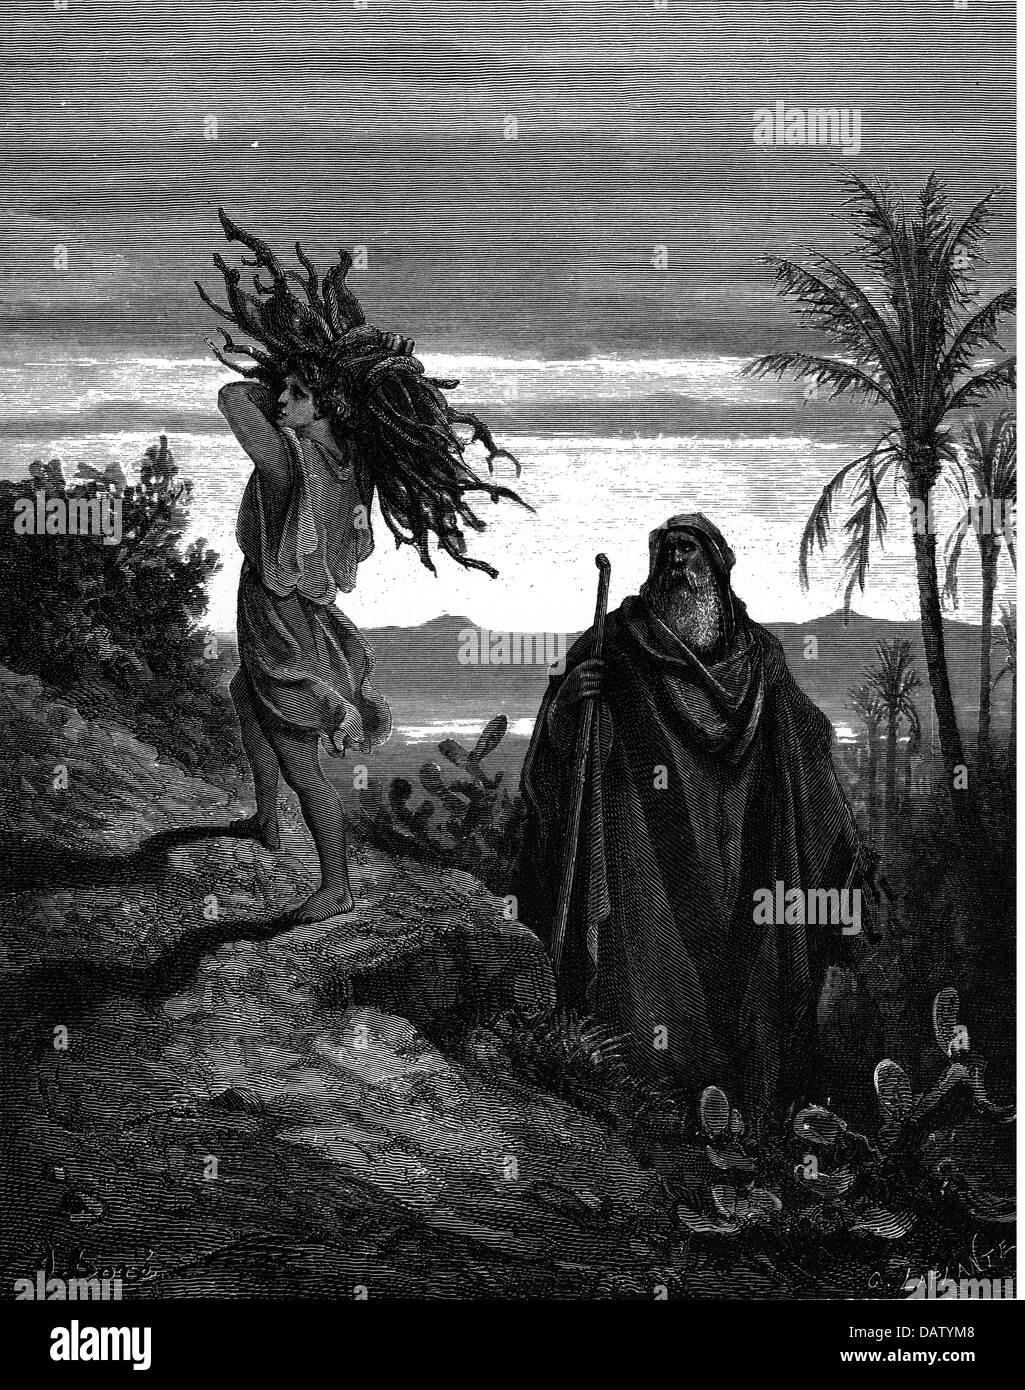 La religione, scene bibliche, 'Sacrifice di Issac', incisione su legno per la Bibbia da Gustave Doré, 1866, artista del diritto d'autore non deve essere cancellata Foto Stock